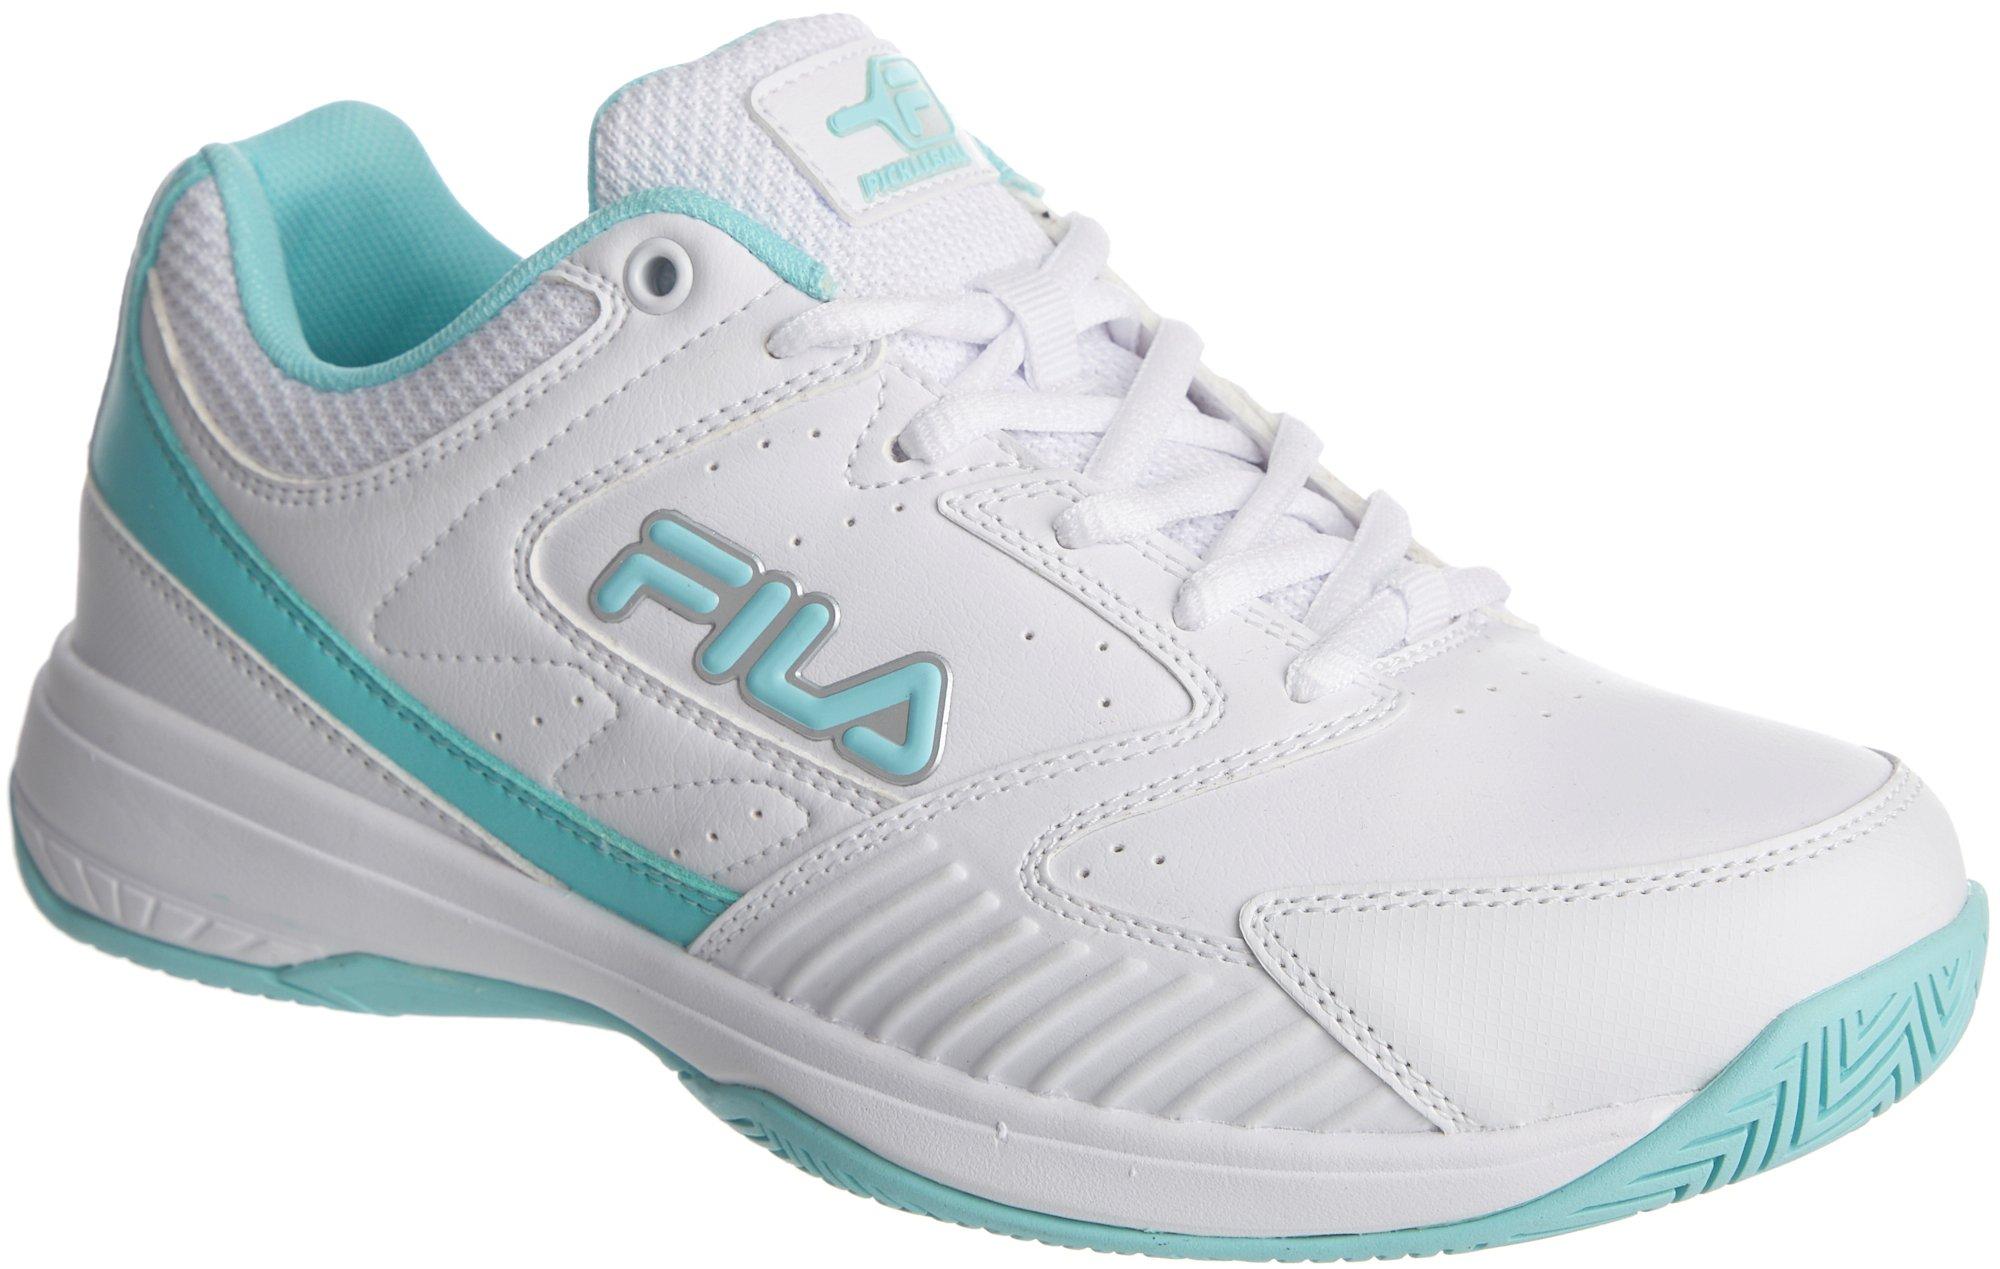 Womens Rifaso Tennis-Pickleball Shoes